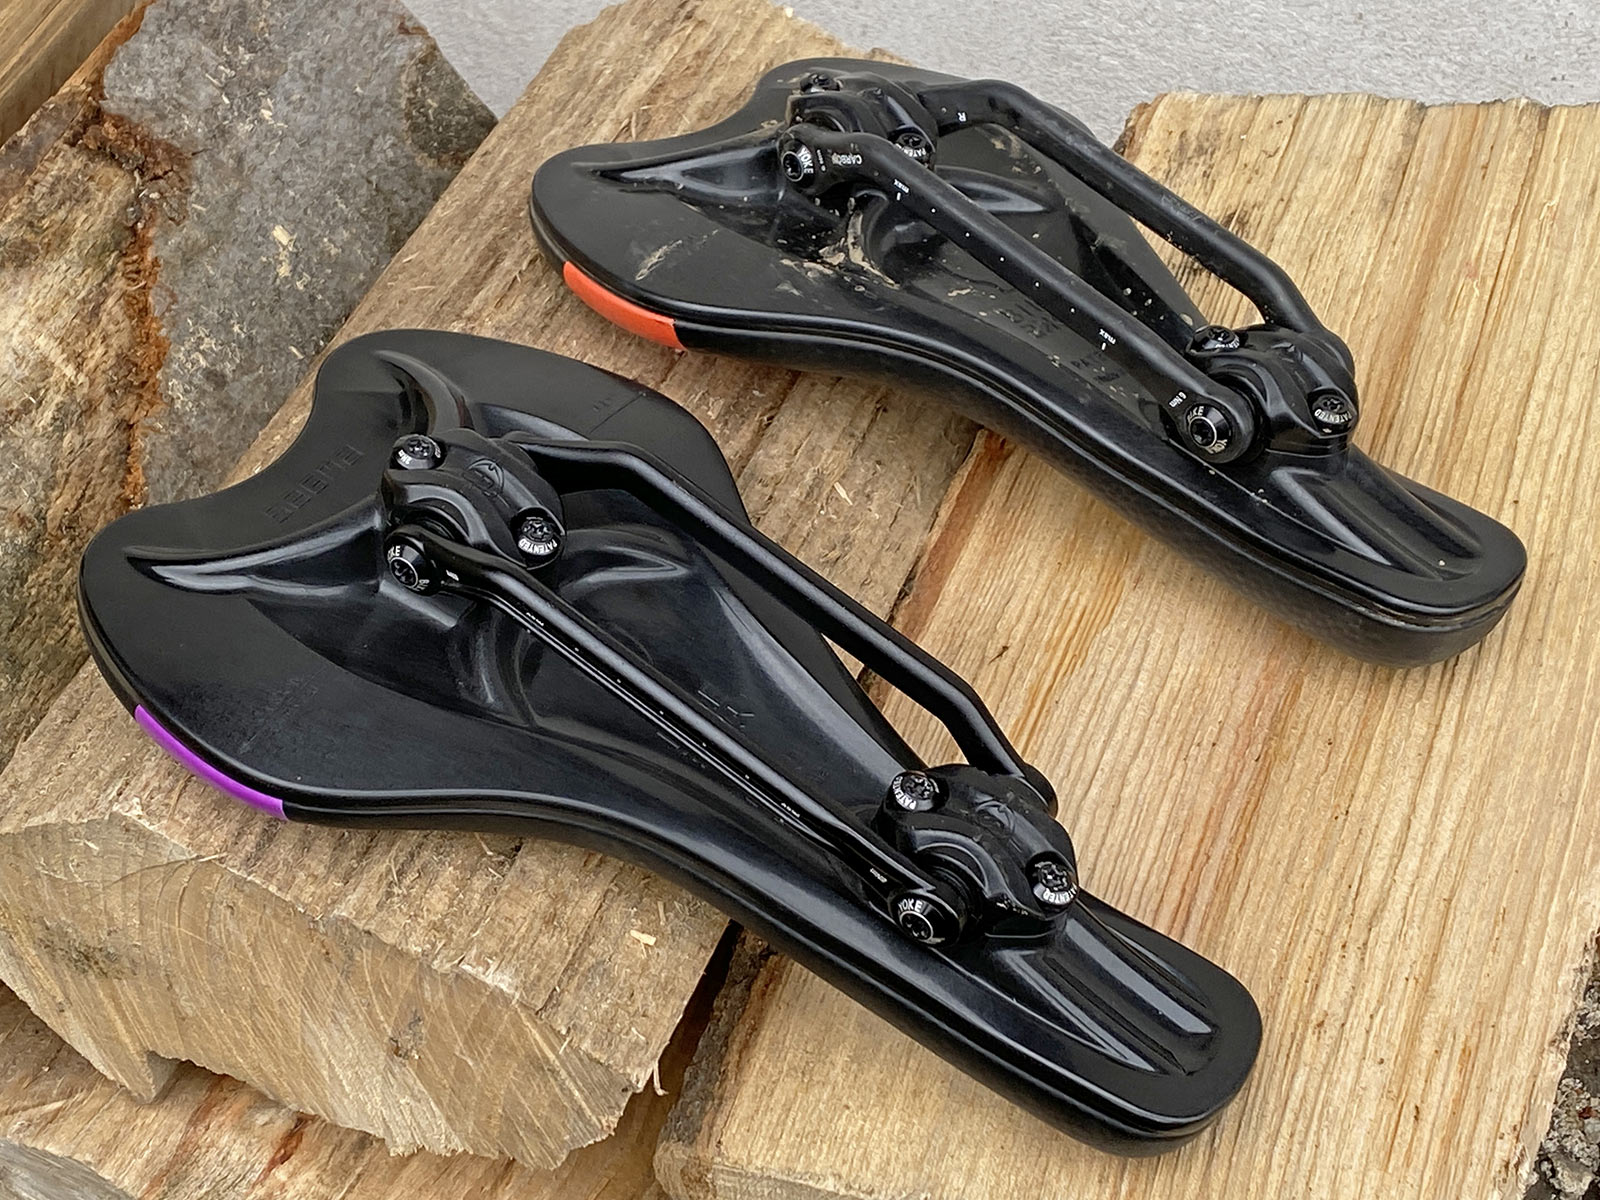 BikeYoke Sagma Carbon floating suspension saddle, underside of carbon-reinforced she;ll;